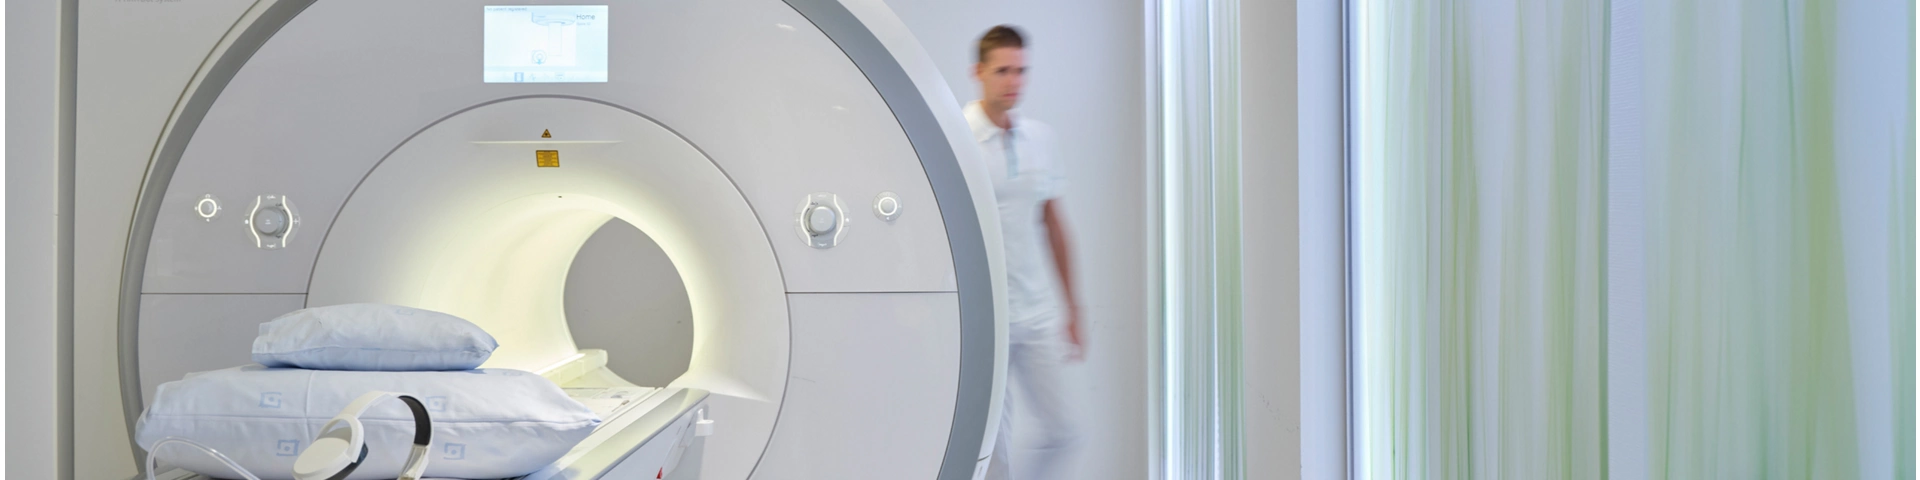 zentren studieren radiologie zurich Radiologie und Neuroradiologie Zürich - Klinik Im Park